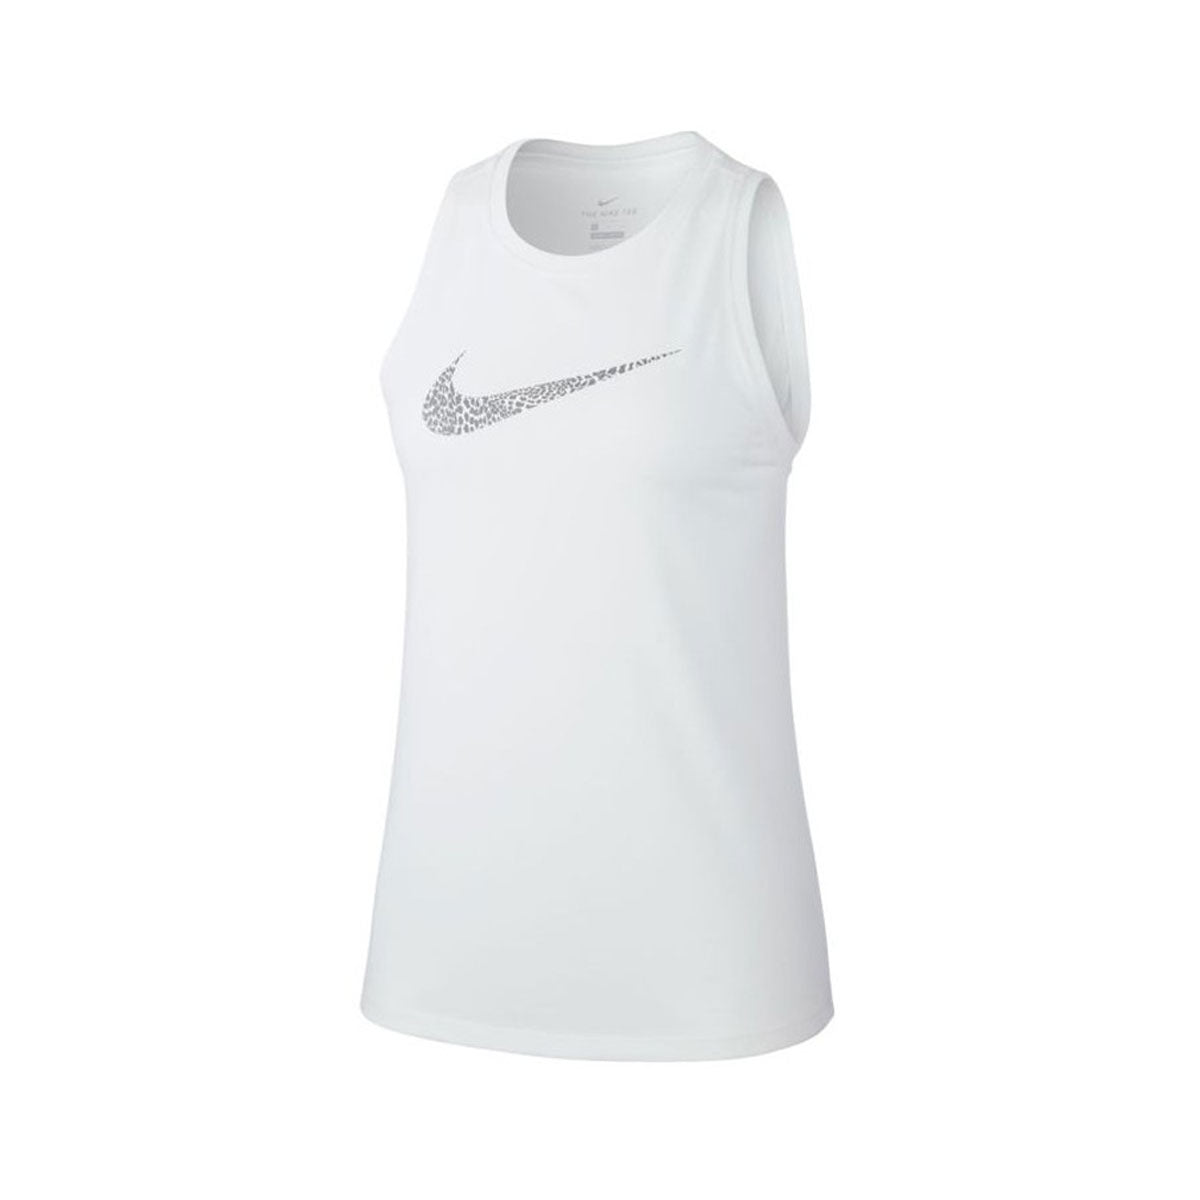 Nike Women's Dry Leopard T-Shirt